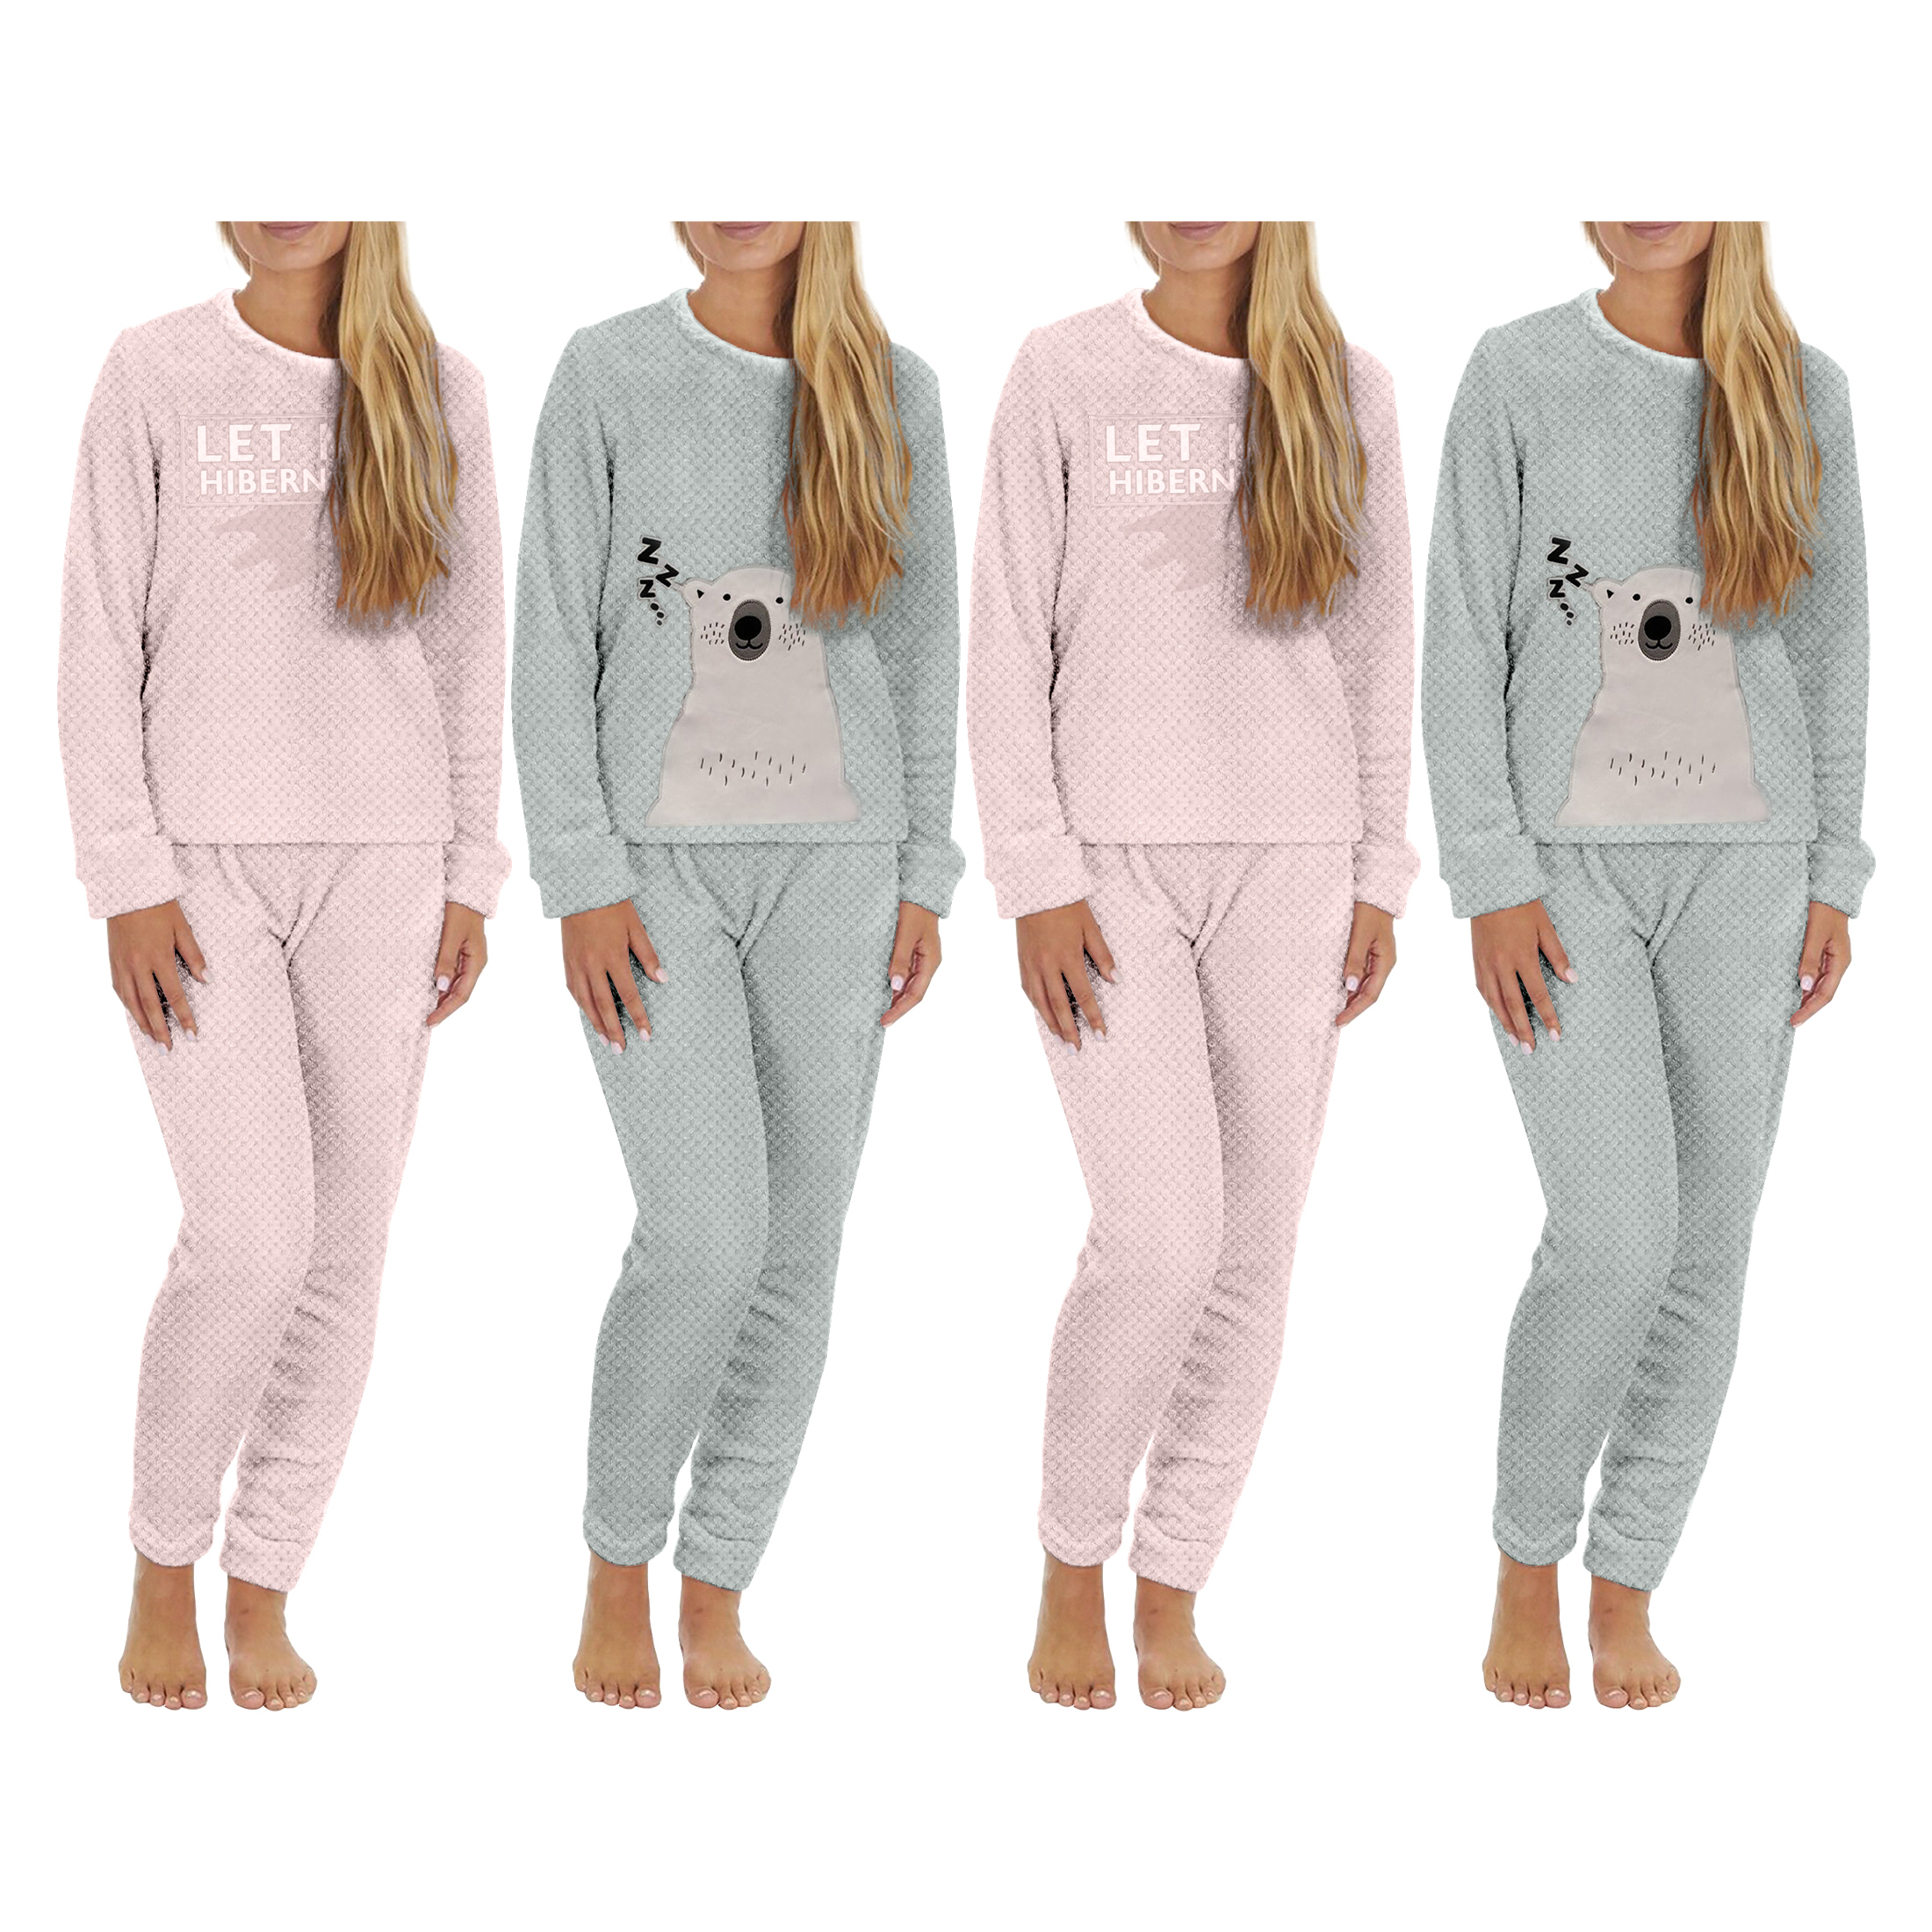 4-Piece: Plush Popcorn Knit Top And Jogger Pants Pajama Set - Pink, Medium